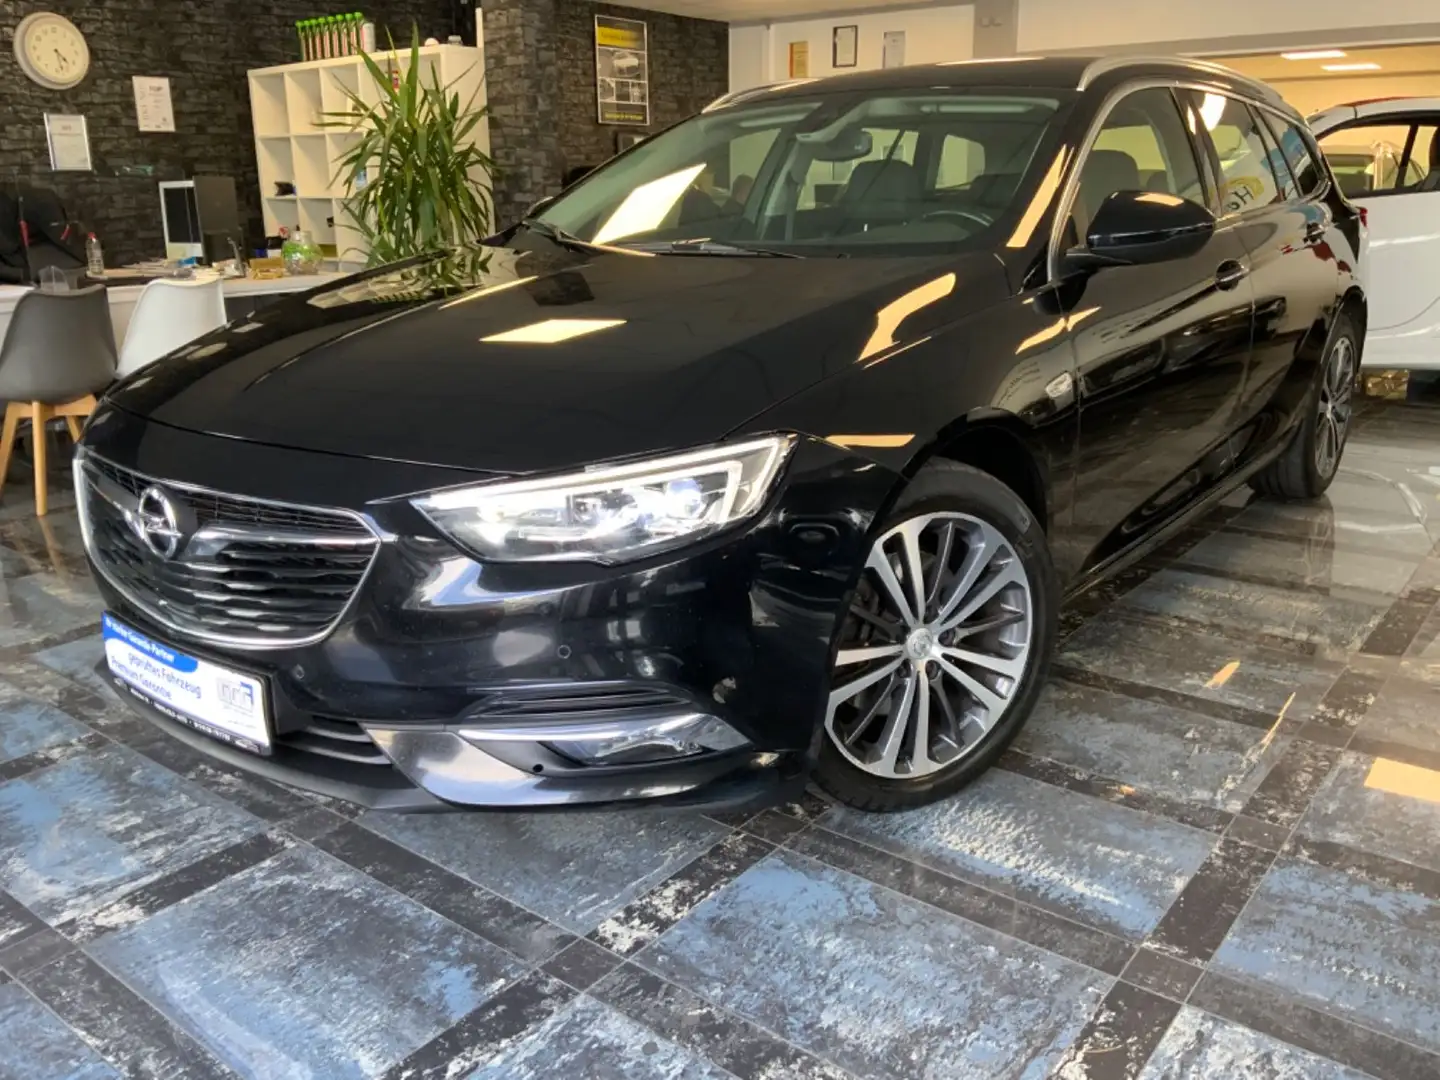 Opel Insignia Kombi in Schwarz gebraucht in Mühlheim / Main für